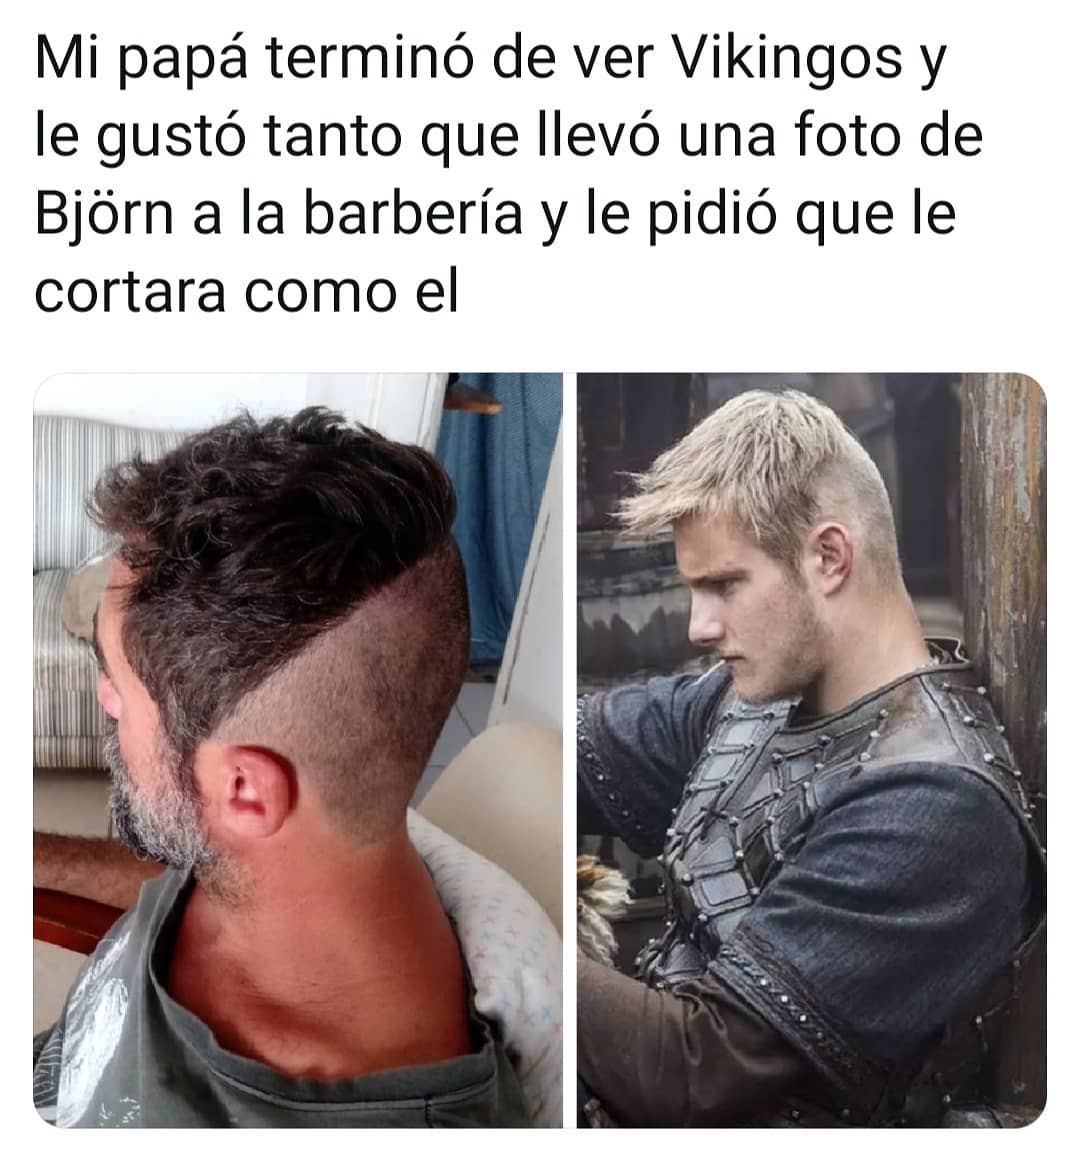 Mi papá terminó de ver Vikingos y le gustó tanto que llevó una foto de Björn a la barbería y le pidió que le cortara como él.